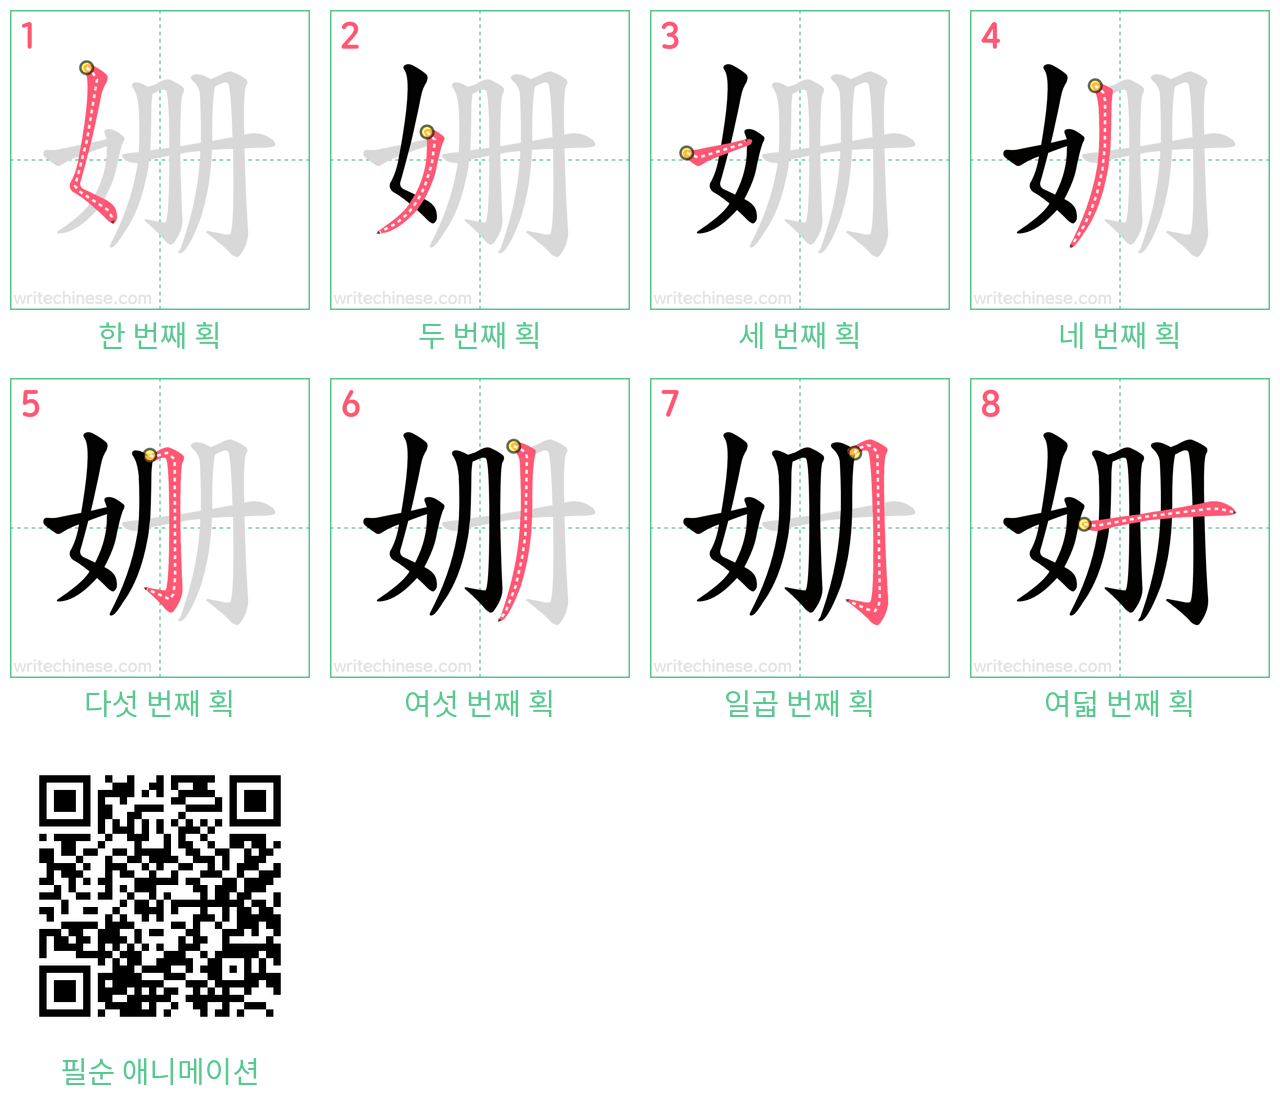 姗 step-by-step stroke order diagrams